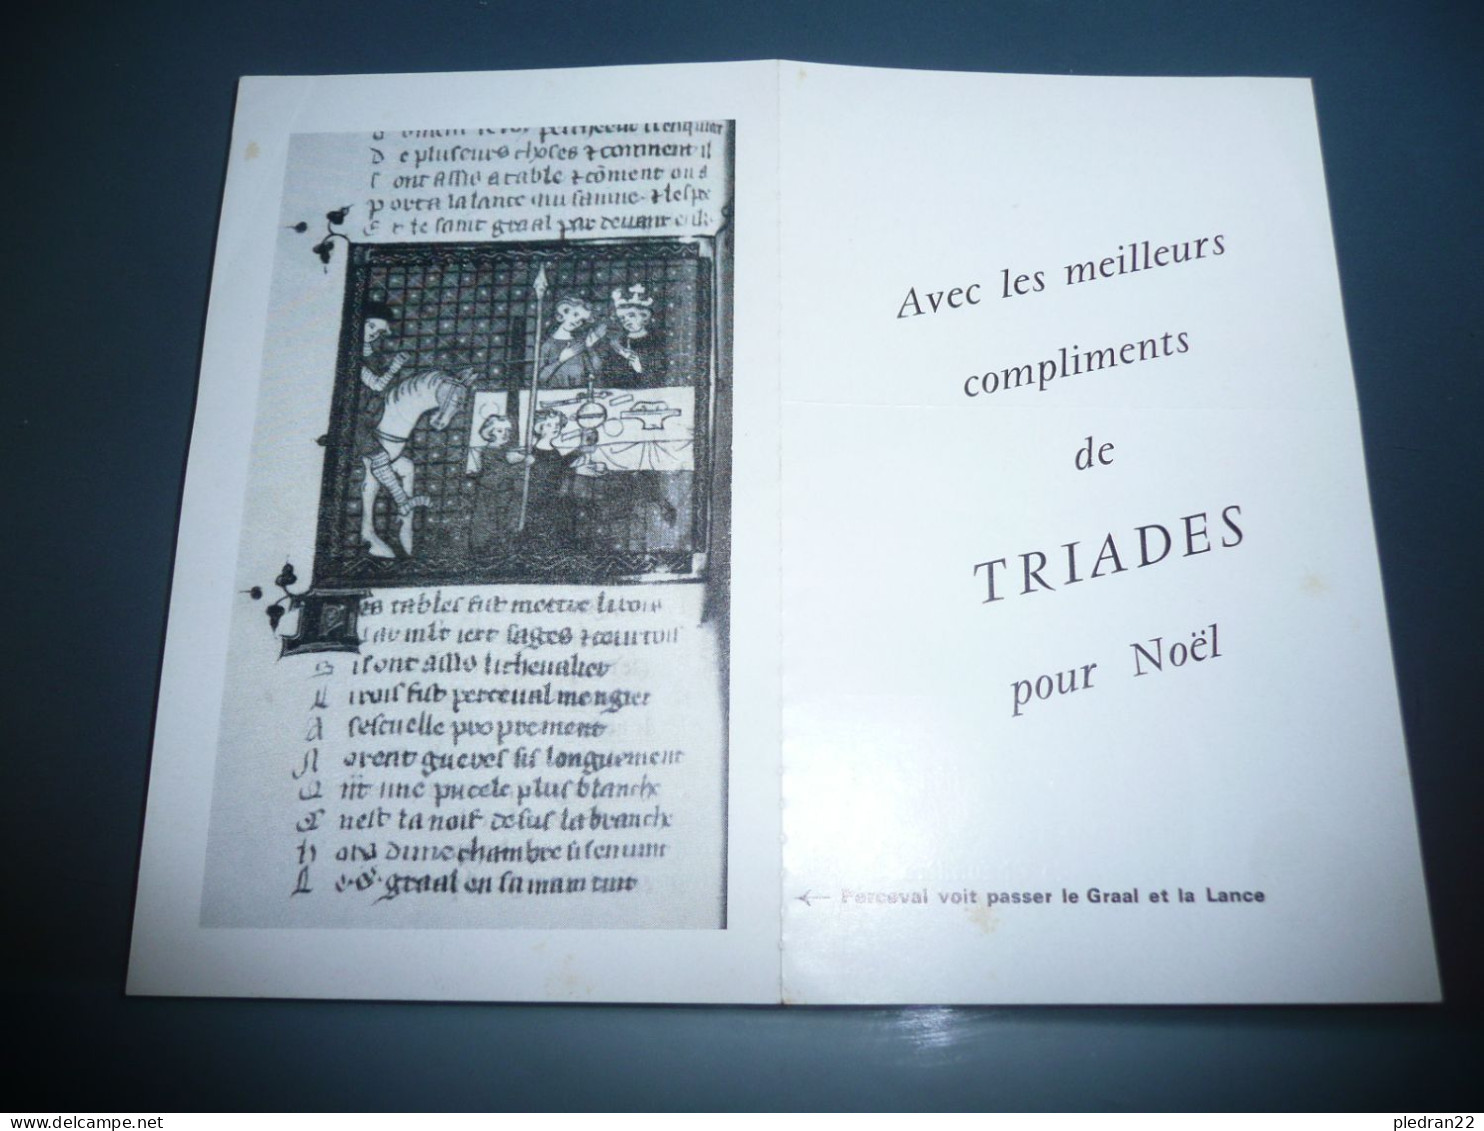 PUBLICITE EDITIONS TRIADES PUBLICATION CHRETIEN DE TROYES PERCEVAL ET LE GRAAL DEUXIEME ET TROISIEME CONTINUATIONS 1968 - Advertising